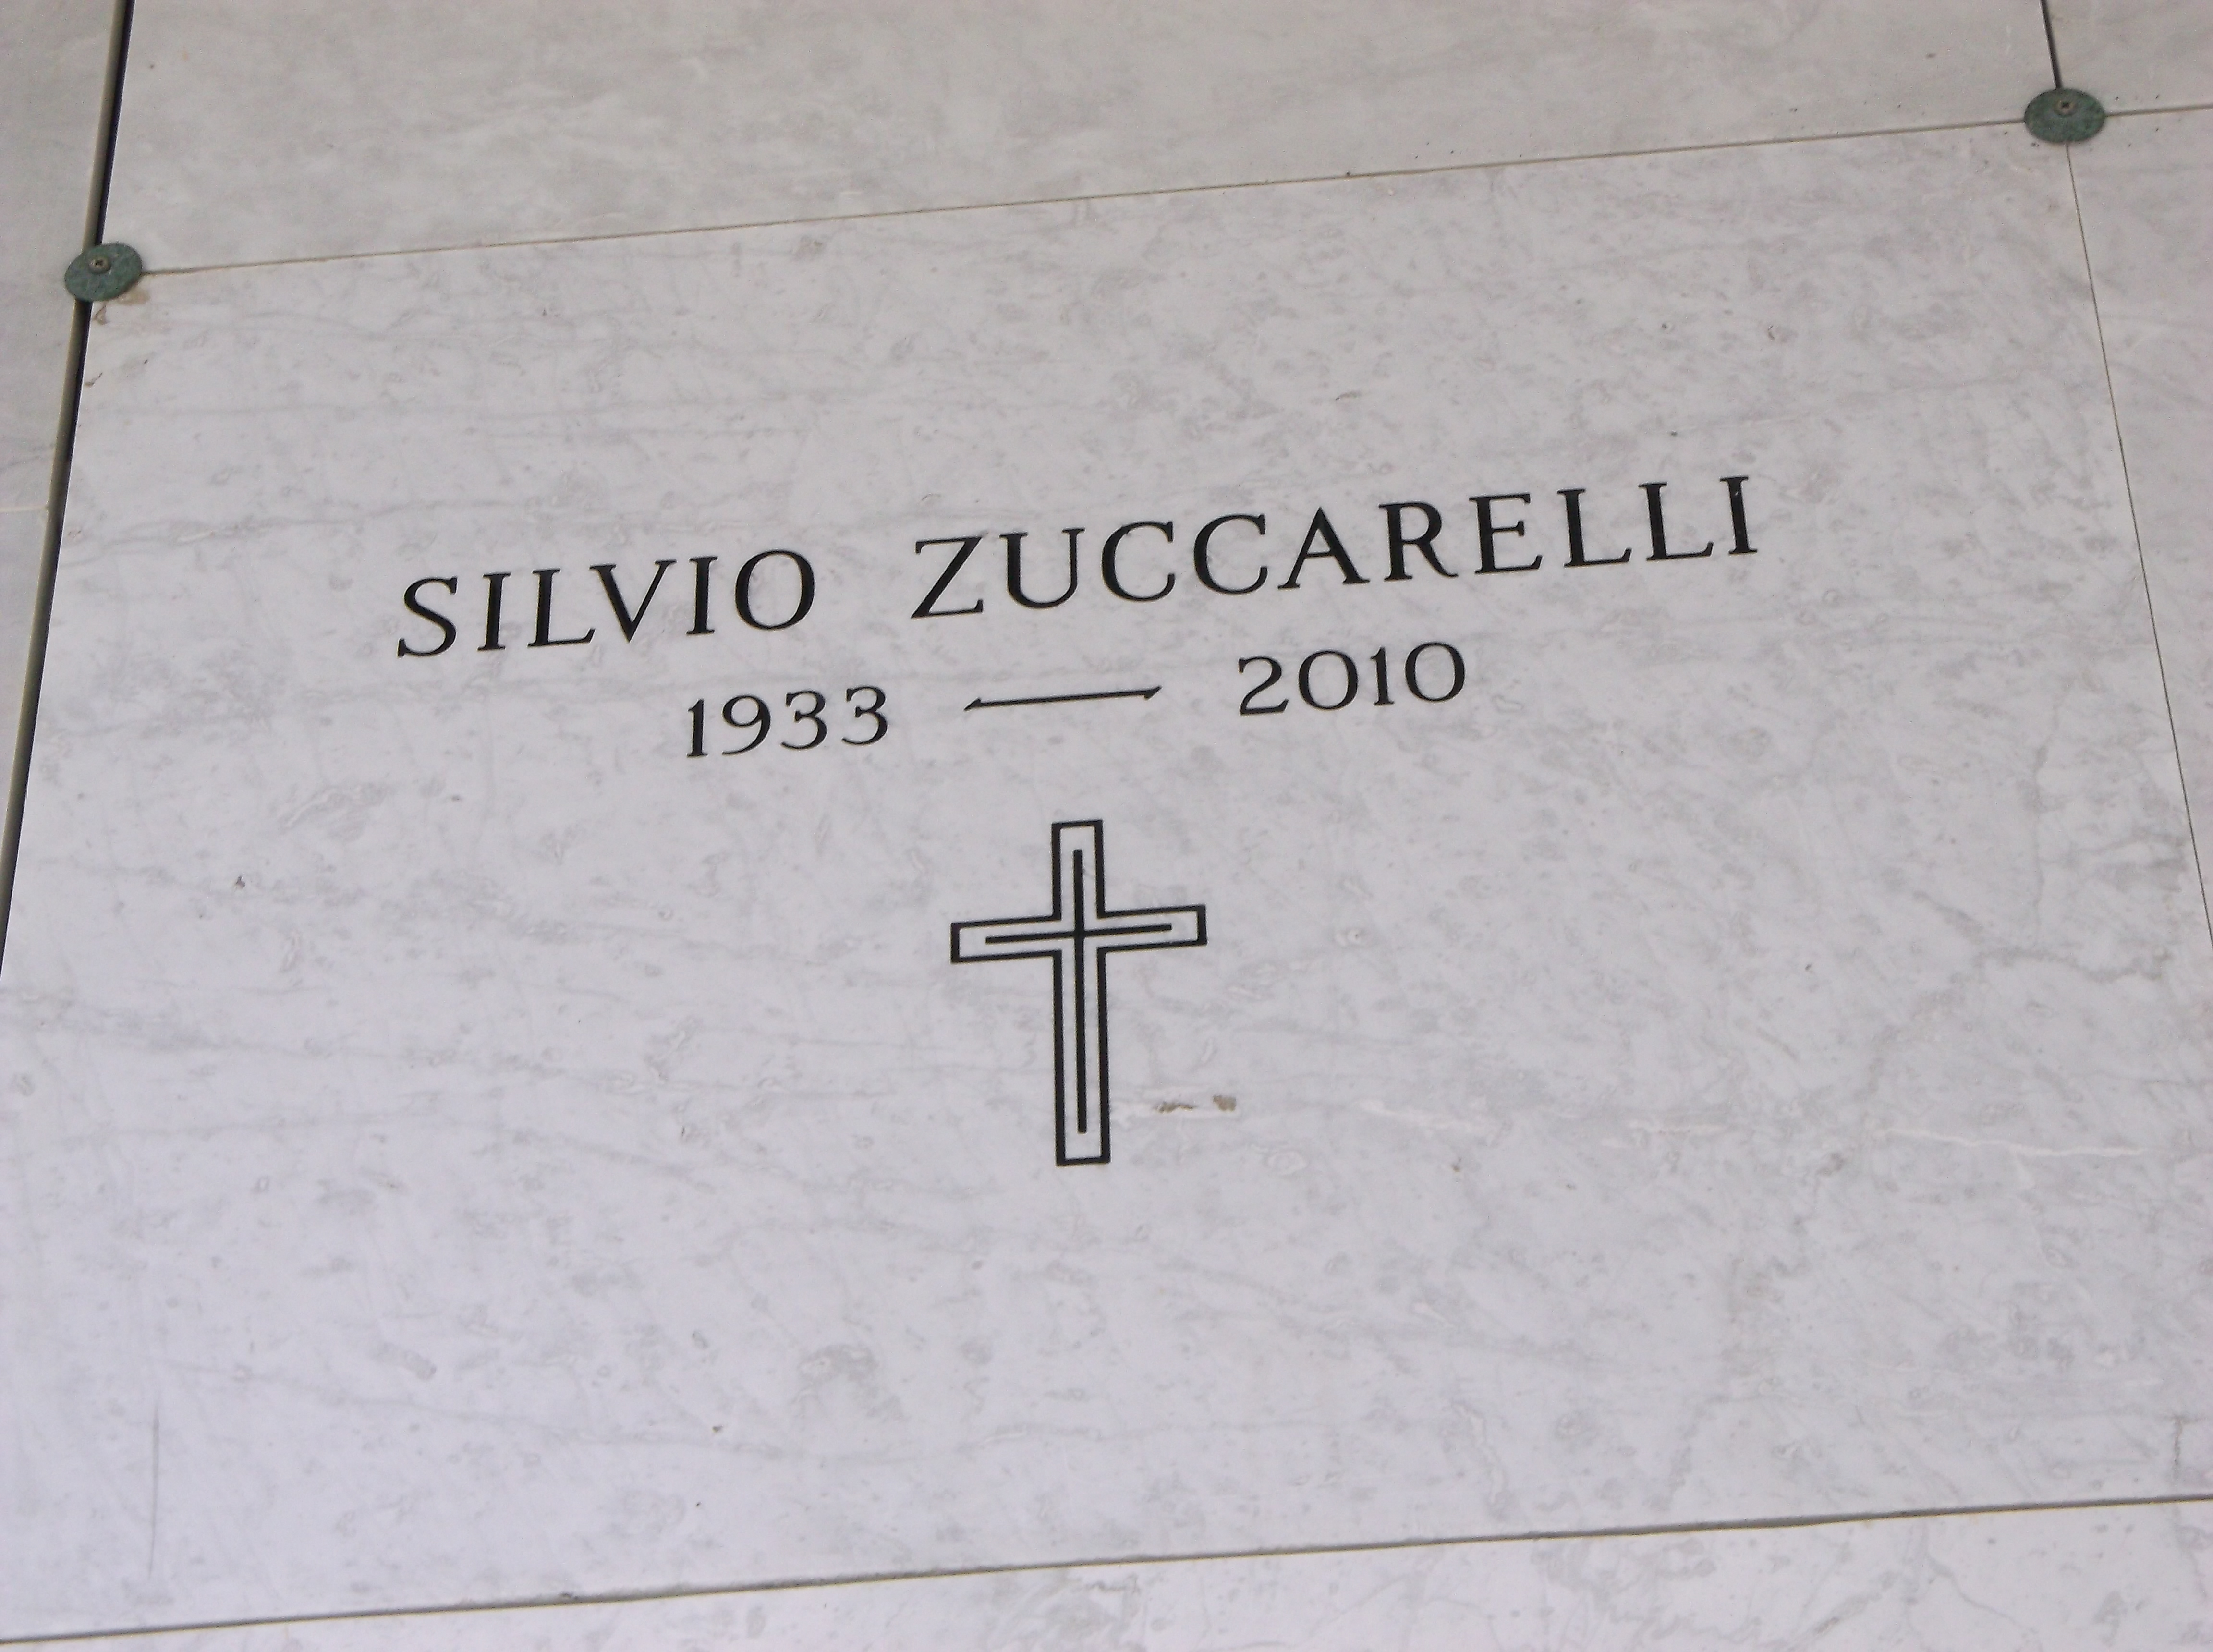 Silvio Zuccarelli